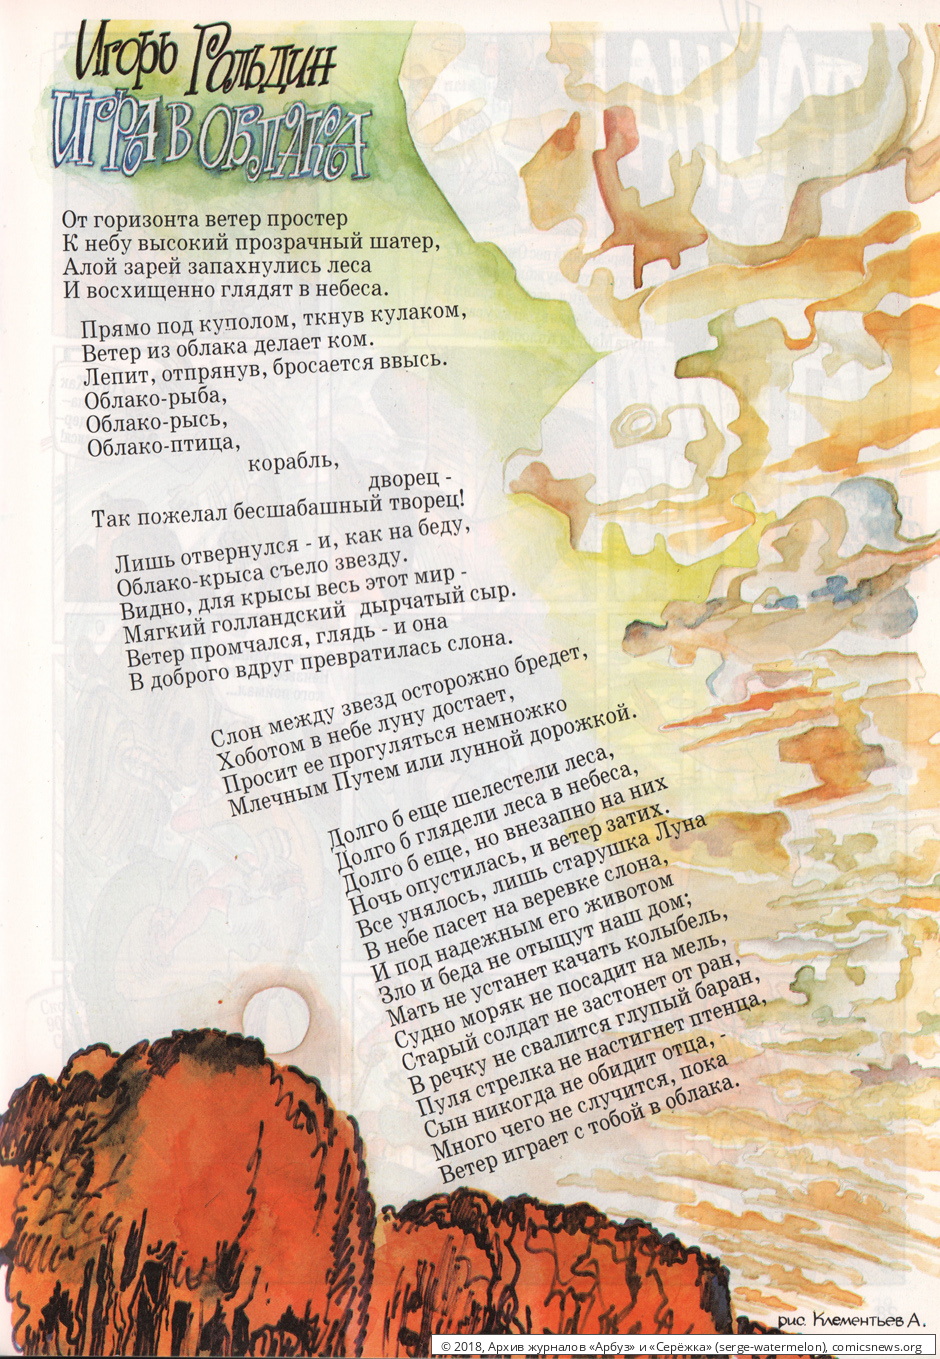 № 18 ( "Серёжка" № 4 / 1996 ) - Архив журналов «Арбуз» и «Серёжка»